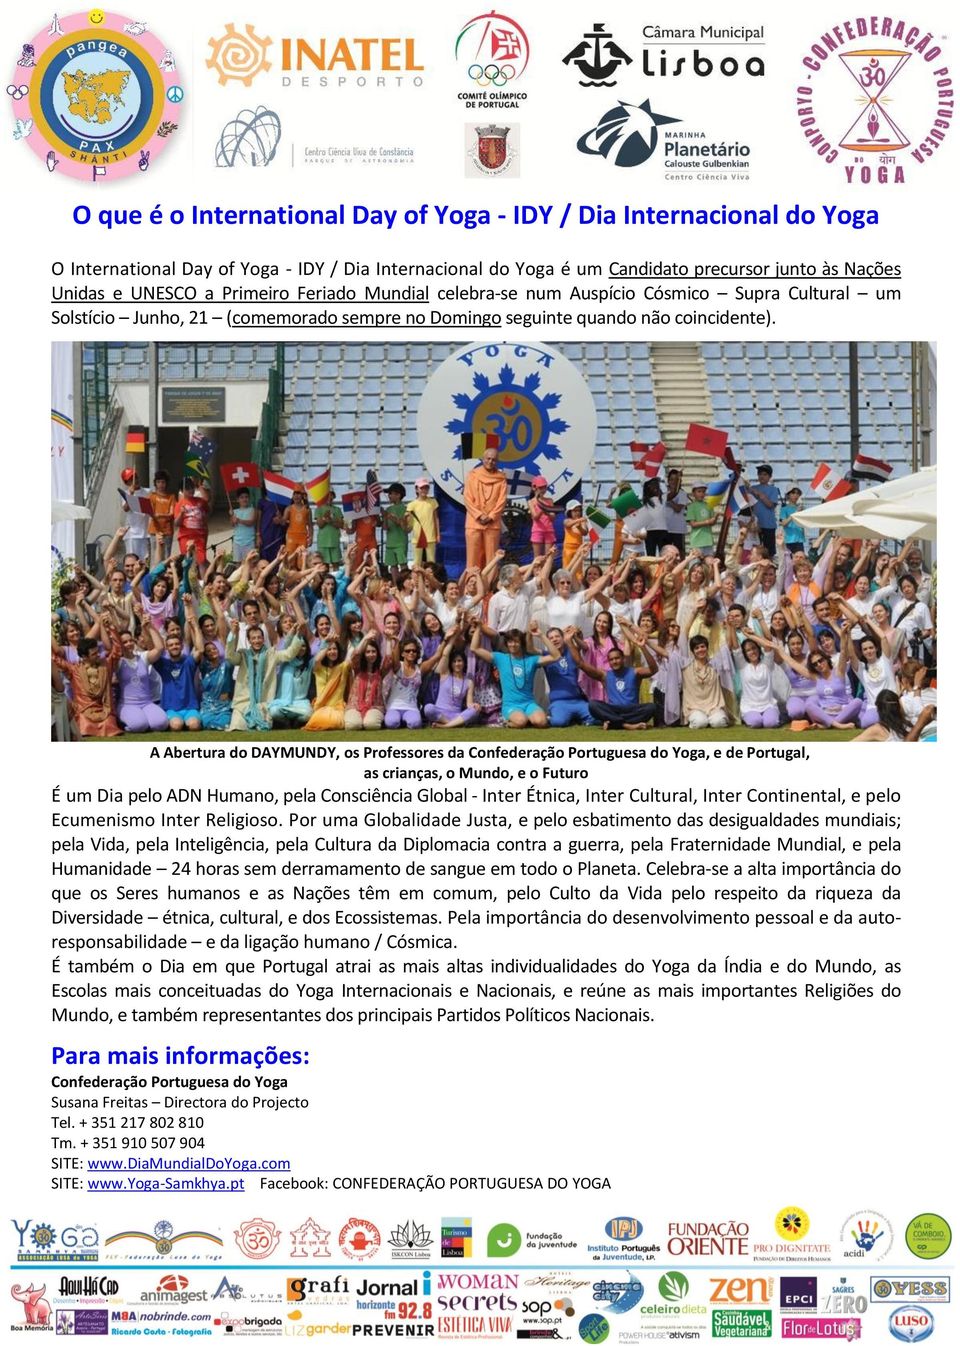 A Abertura do DAYMUNDY, os Professores da Confederação Portuguesa do Yoga, e de Portugal, as crianças, o Mundo, e o Futuro É um Dia pelo ADN Humano, pela Consciência Global - Inter Étnica, Inter